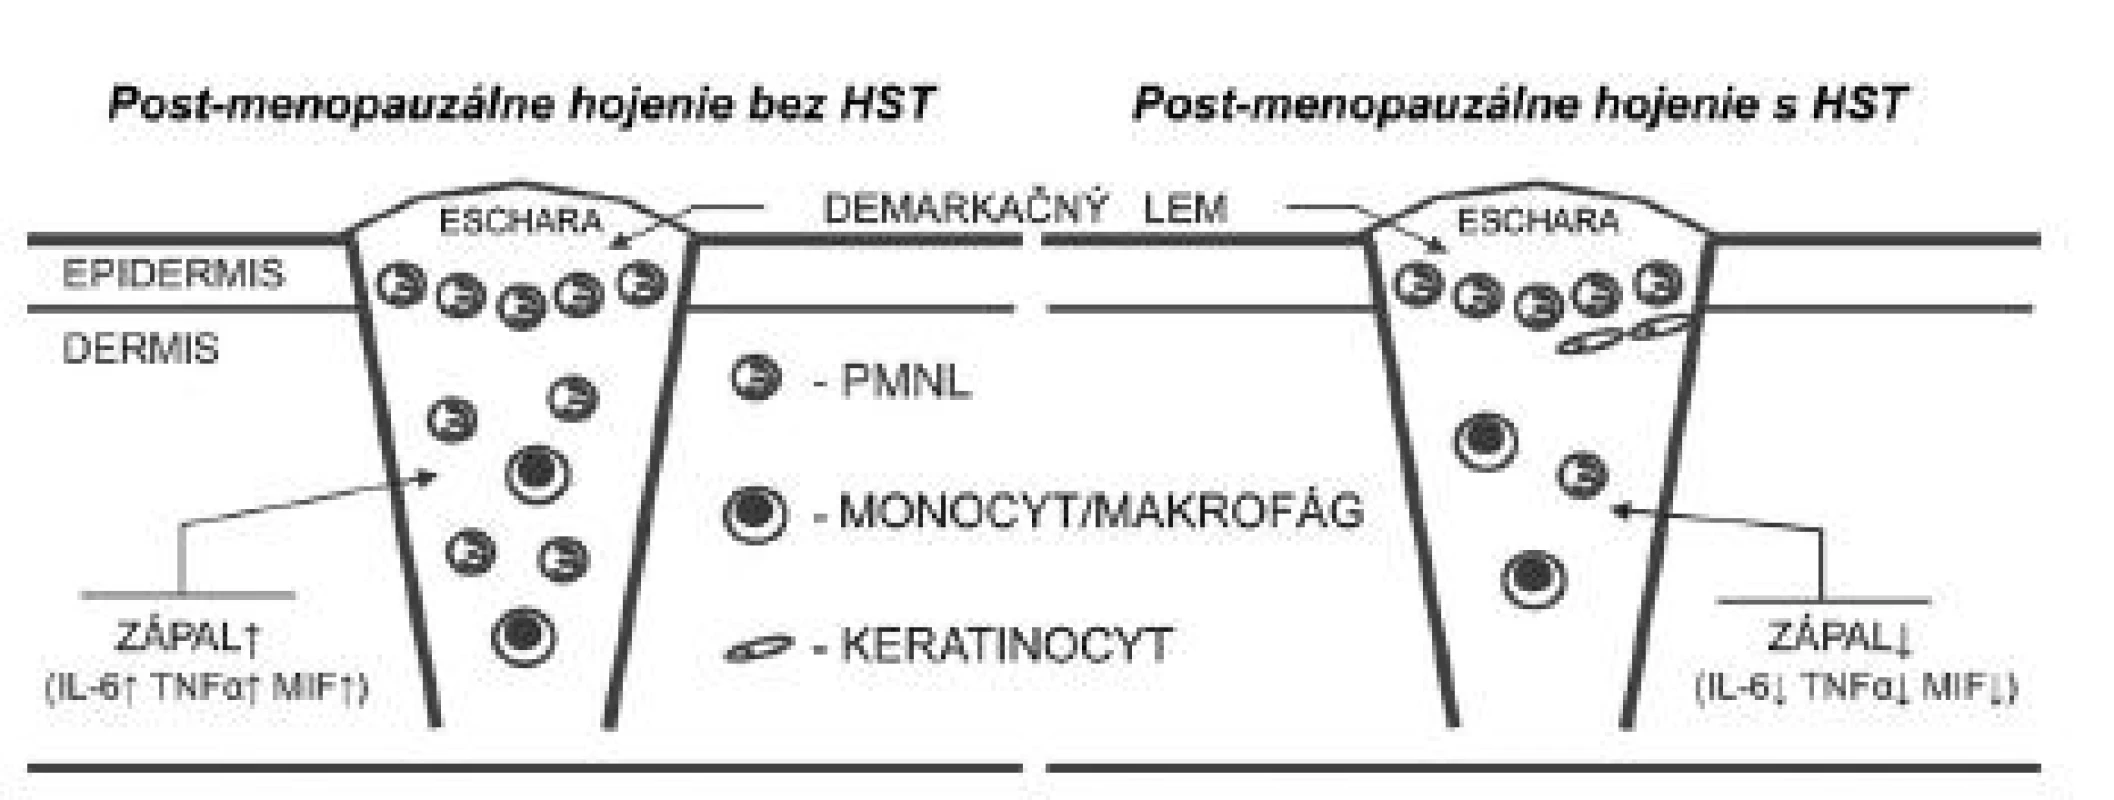 Hojenie rán v post-menopauzálnom období je charakteristické zvýšenou zápalovou reakciou organizmu, čo je založené na chýbajúcom inhibičnom efekte estrogénu na kľúčové zápalové faktory ako IL-6, TNF-α a MIF. HST inhibuje expresiu týchto mediátorov, a tým skracuje zápalovú fázu hojenia. HST – hormonálna substitučná terapia, IL-6 – interleukín 6, MIF – faktor inhibujúci migráciu makrofágov, TNF-α – tumor nekrotizujúci faktor alfa, PMNL – polymorfonukleárny leukocyt